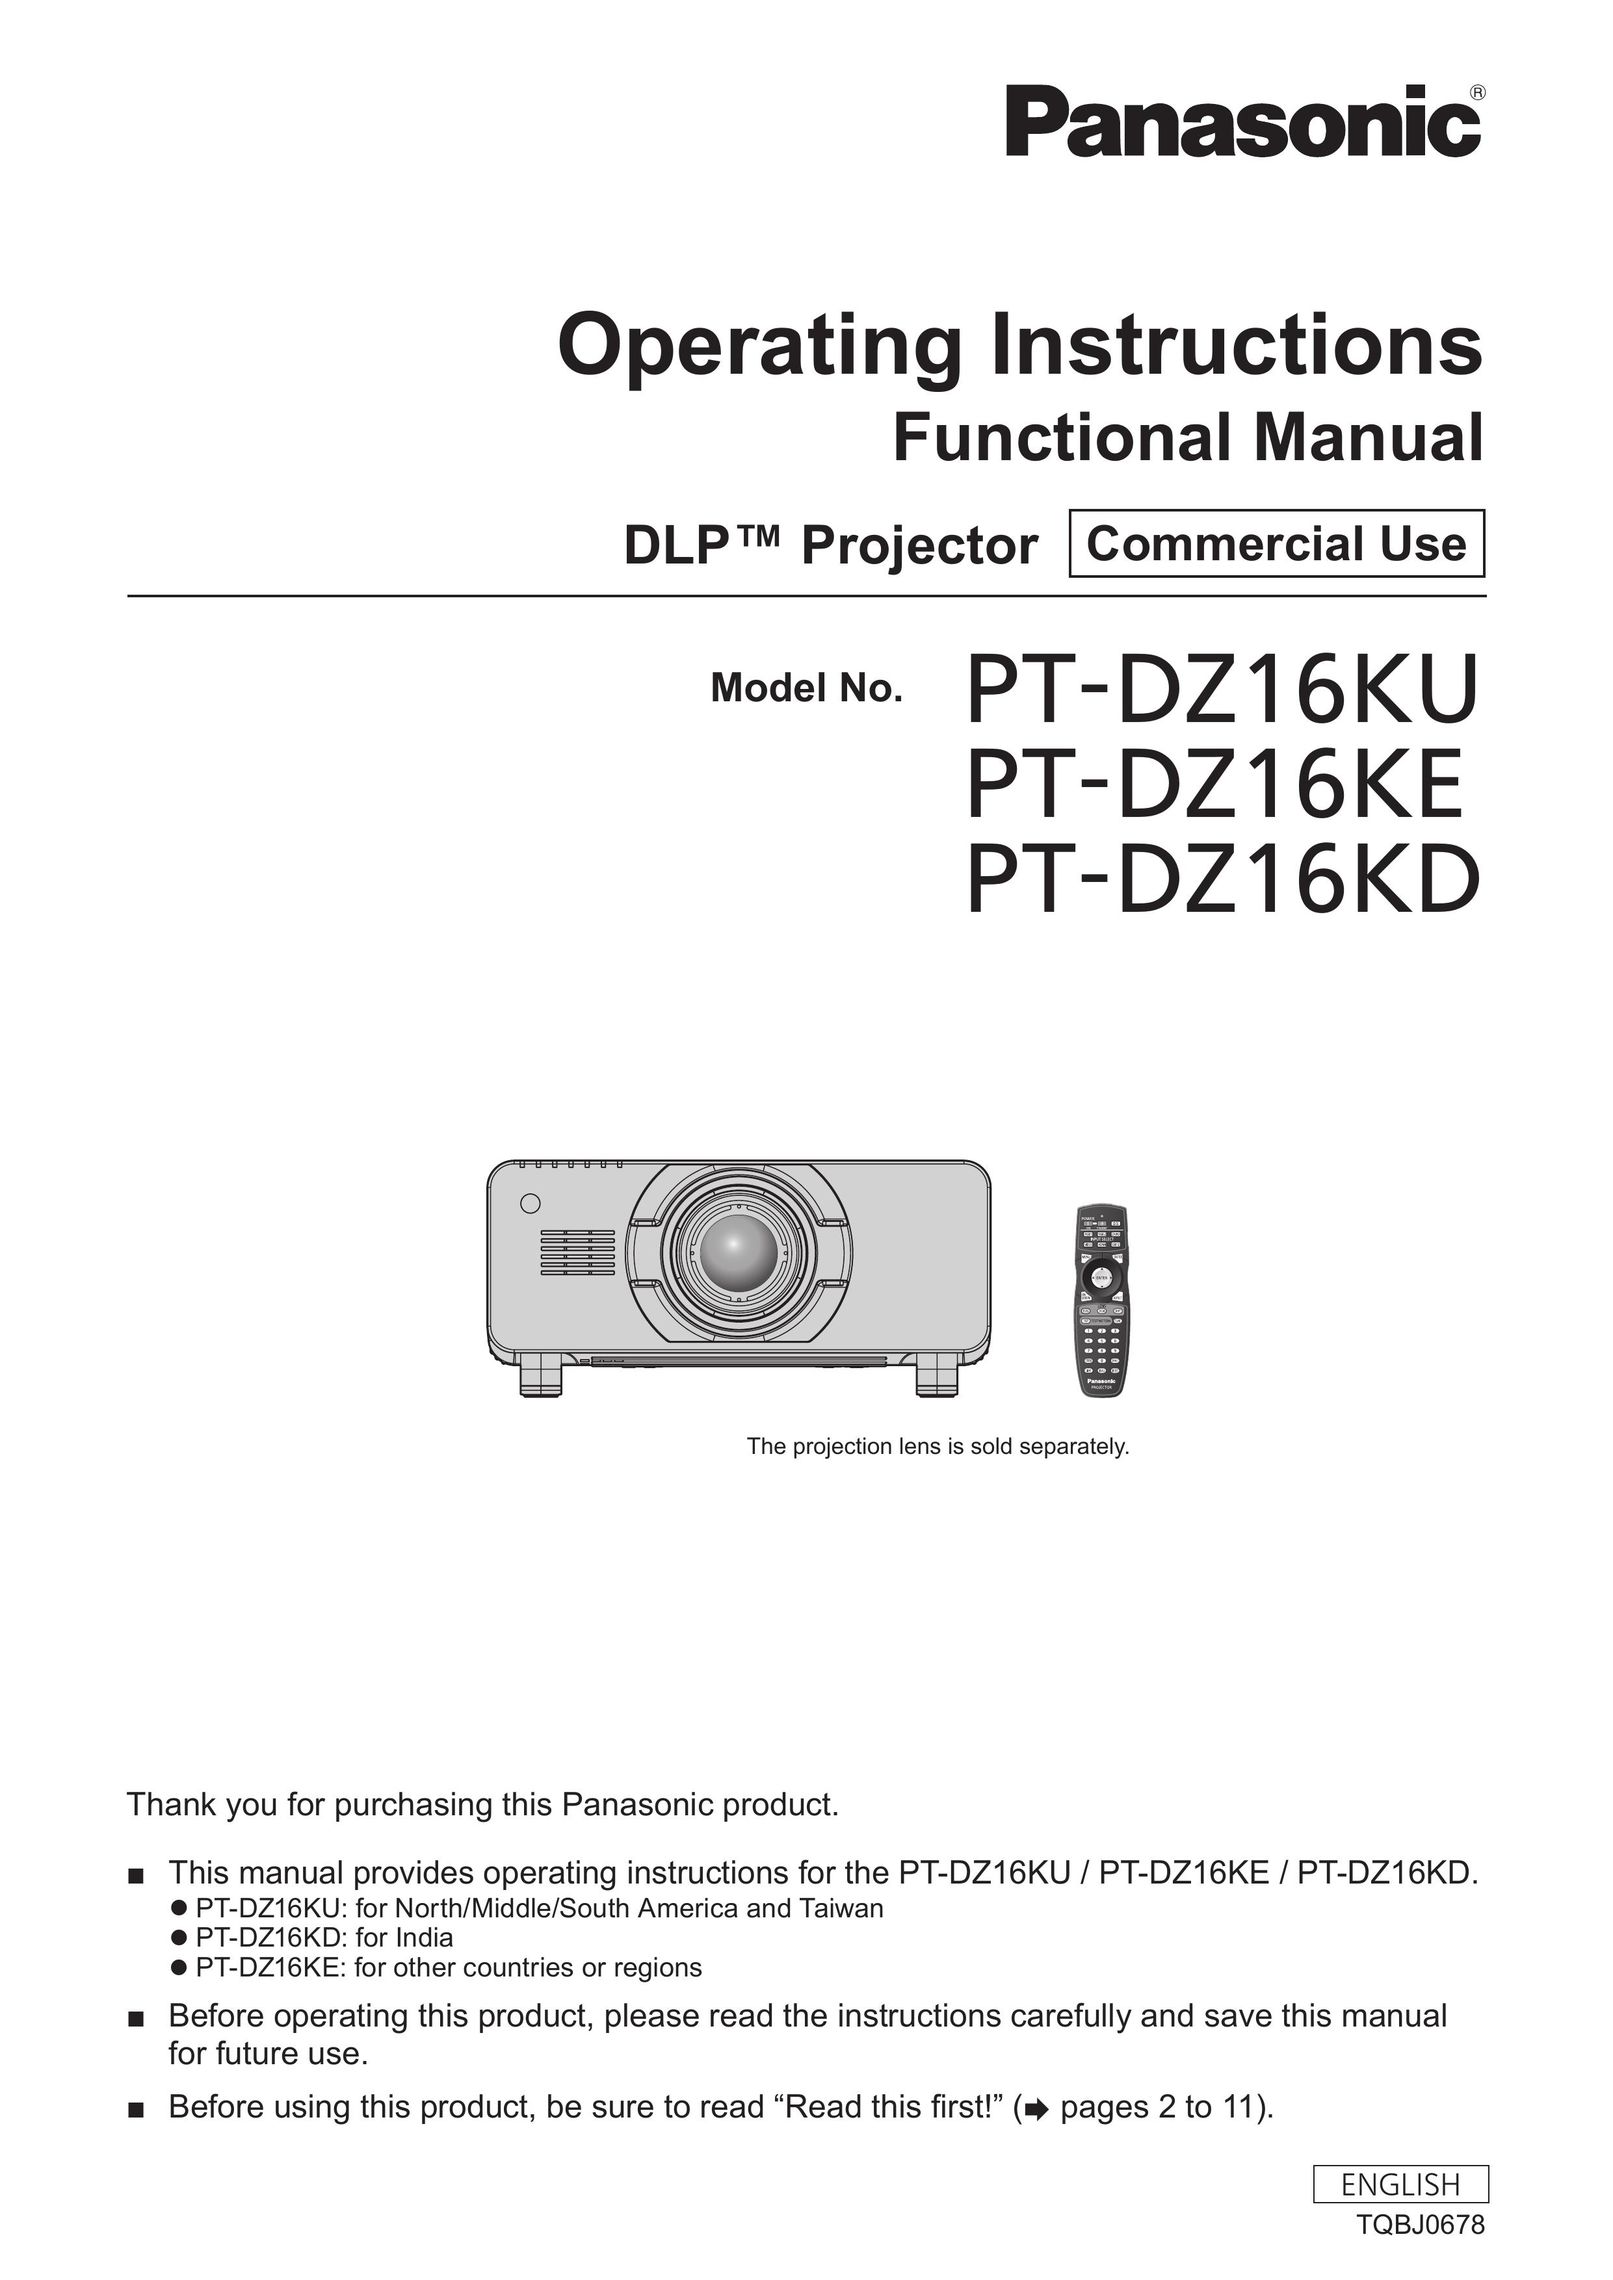 Panasonic PT-DZ16KU Home Theater System User Manual